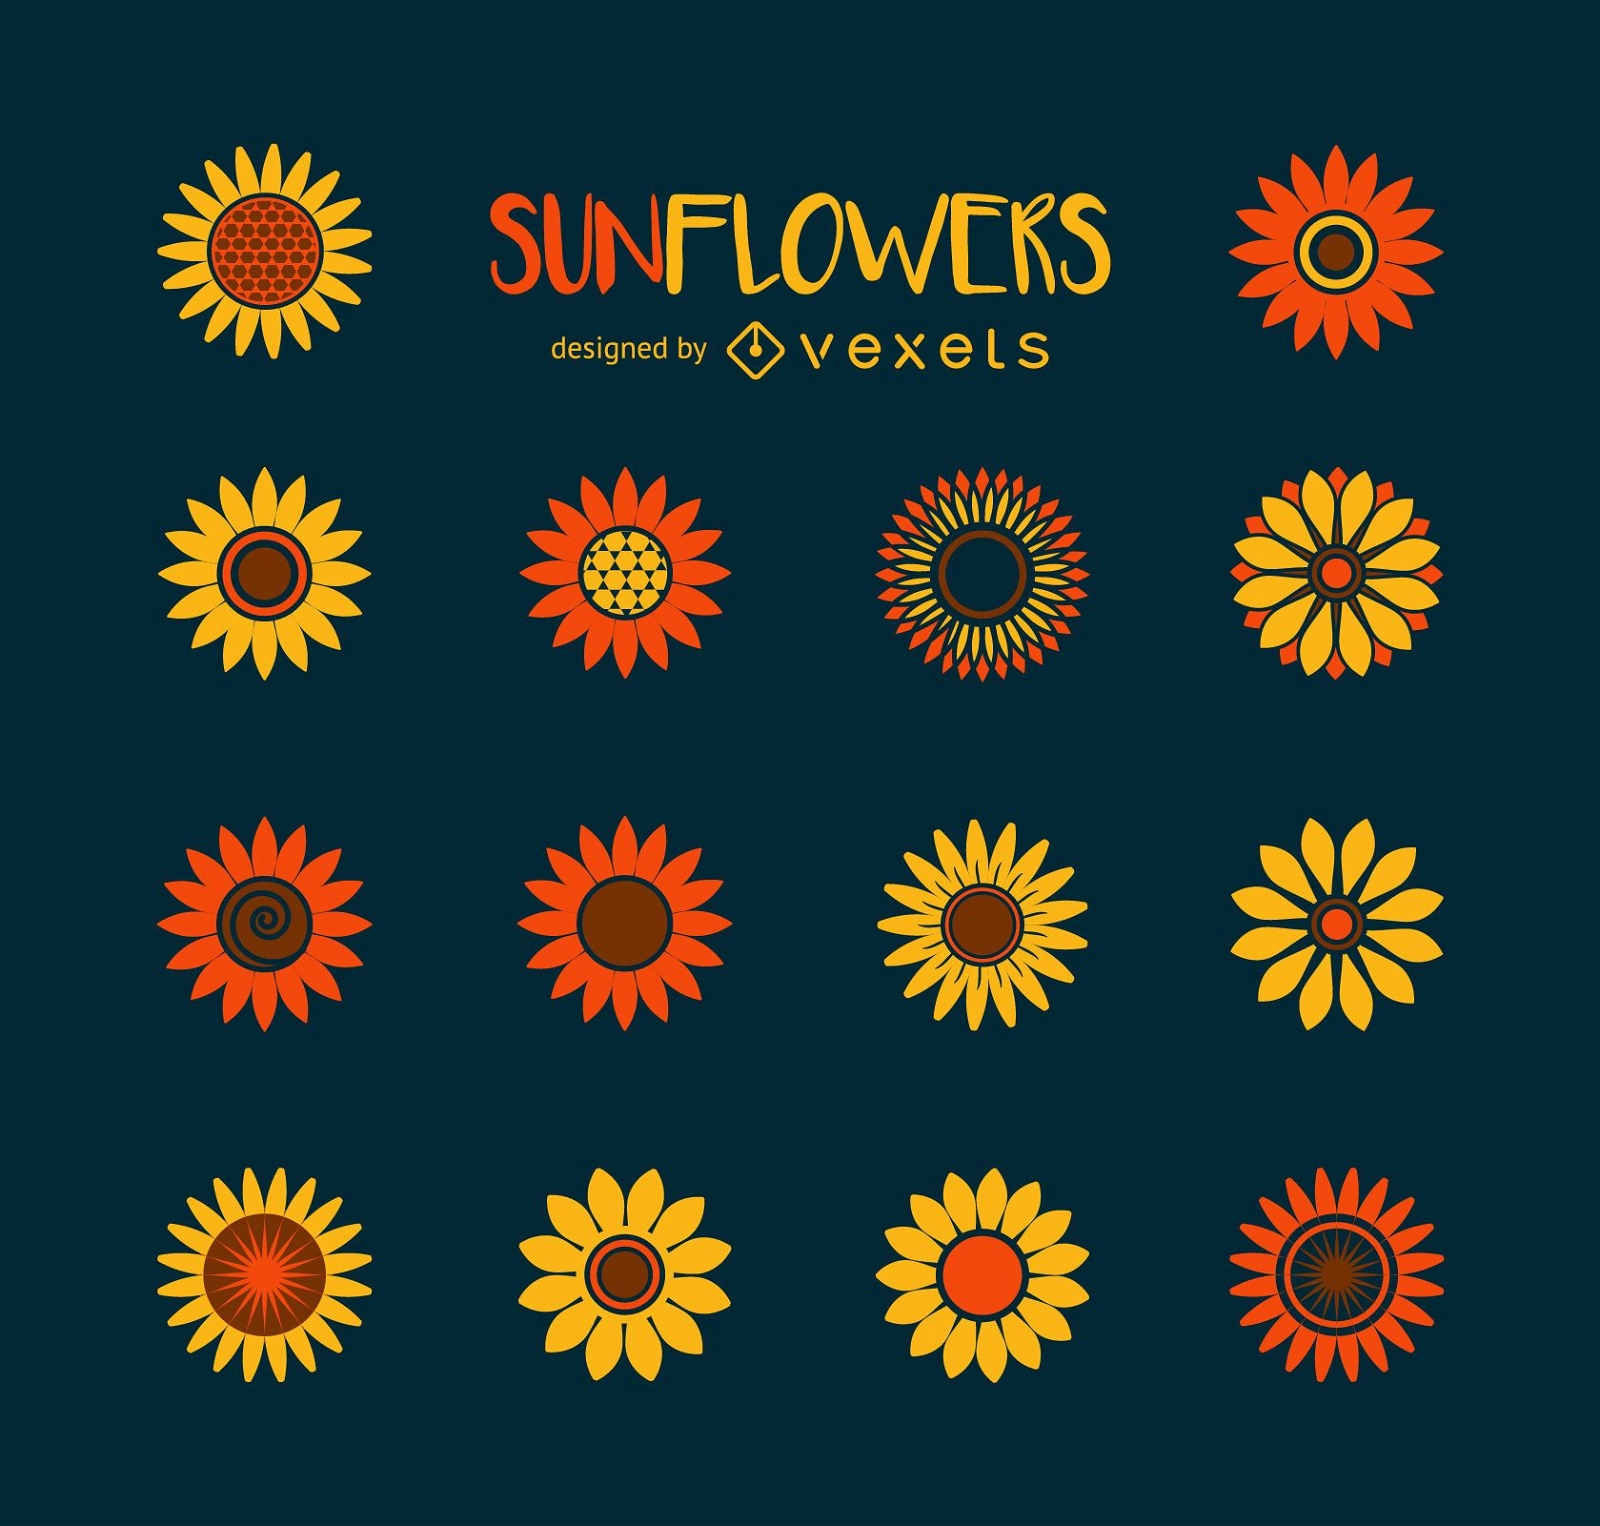 Minimalist sunflower illustration collection